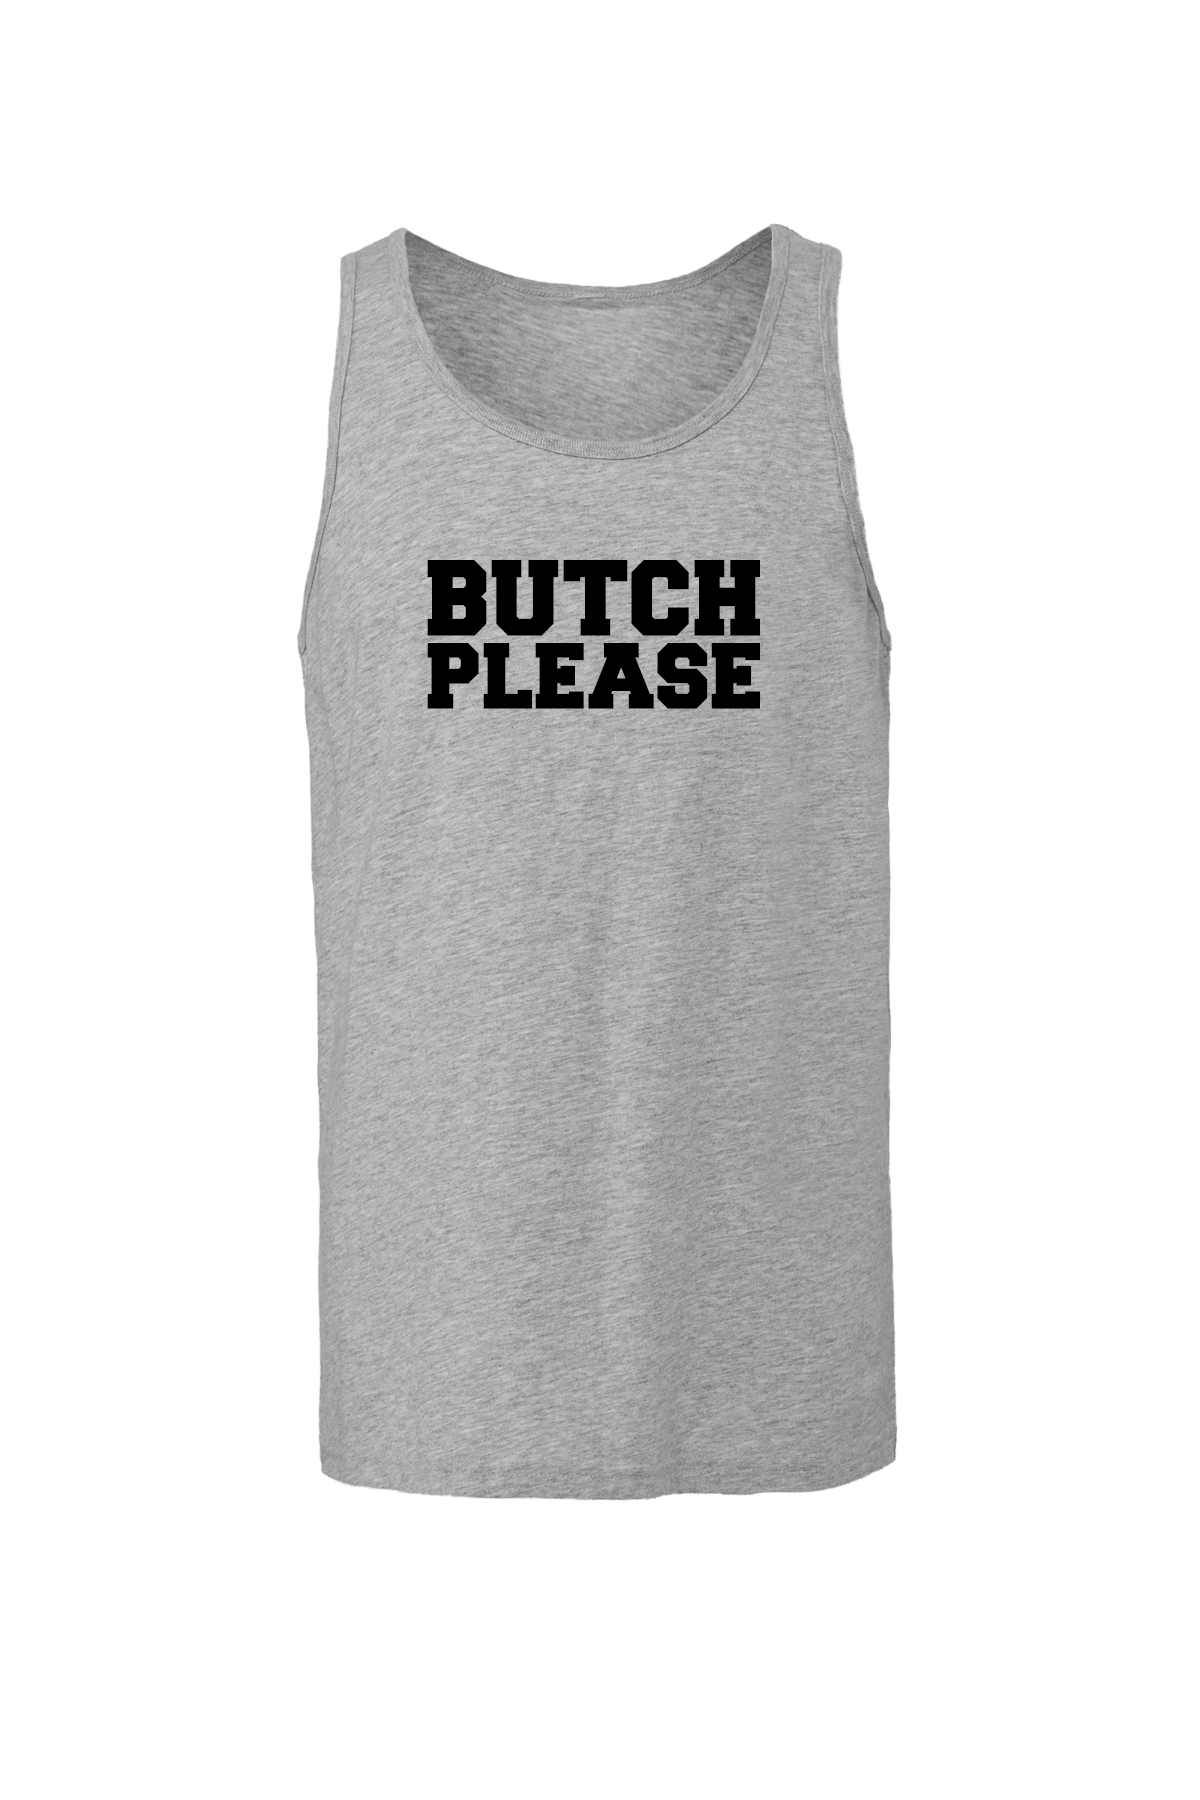 Butch Please Tank Top Akron Pride Custom Tees